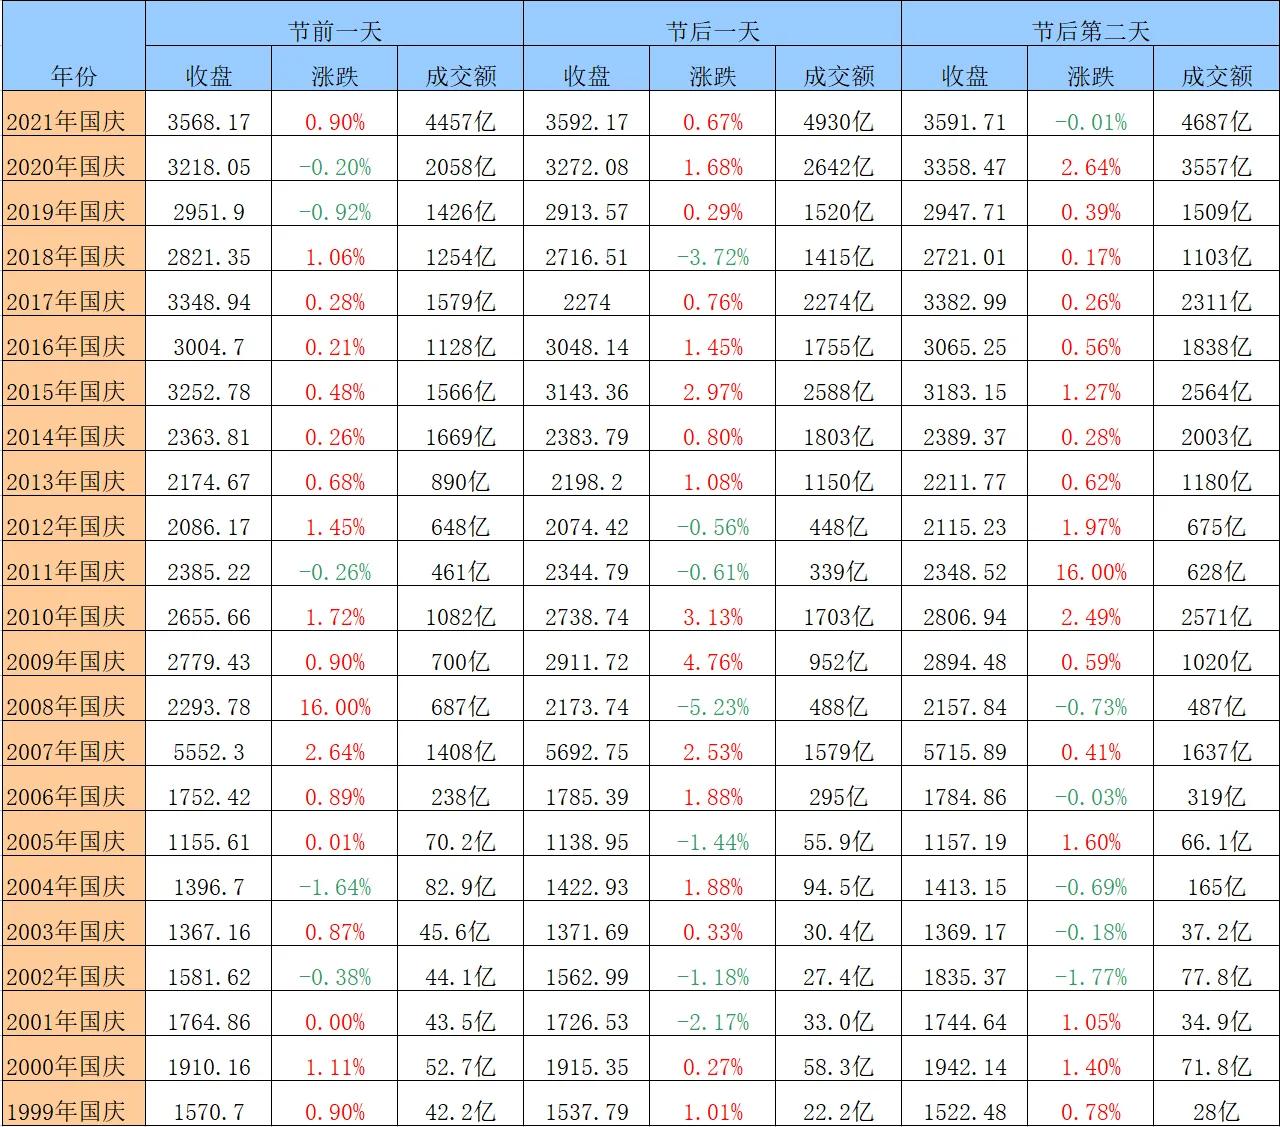 历年股市指数(历史上近二十年国庆前后股市行情走势以及近十年来股市重大事件)